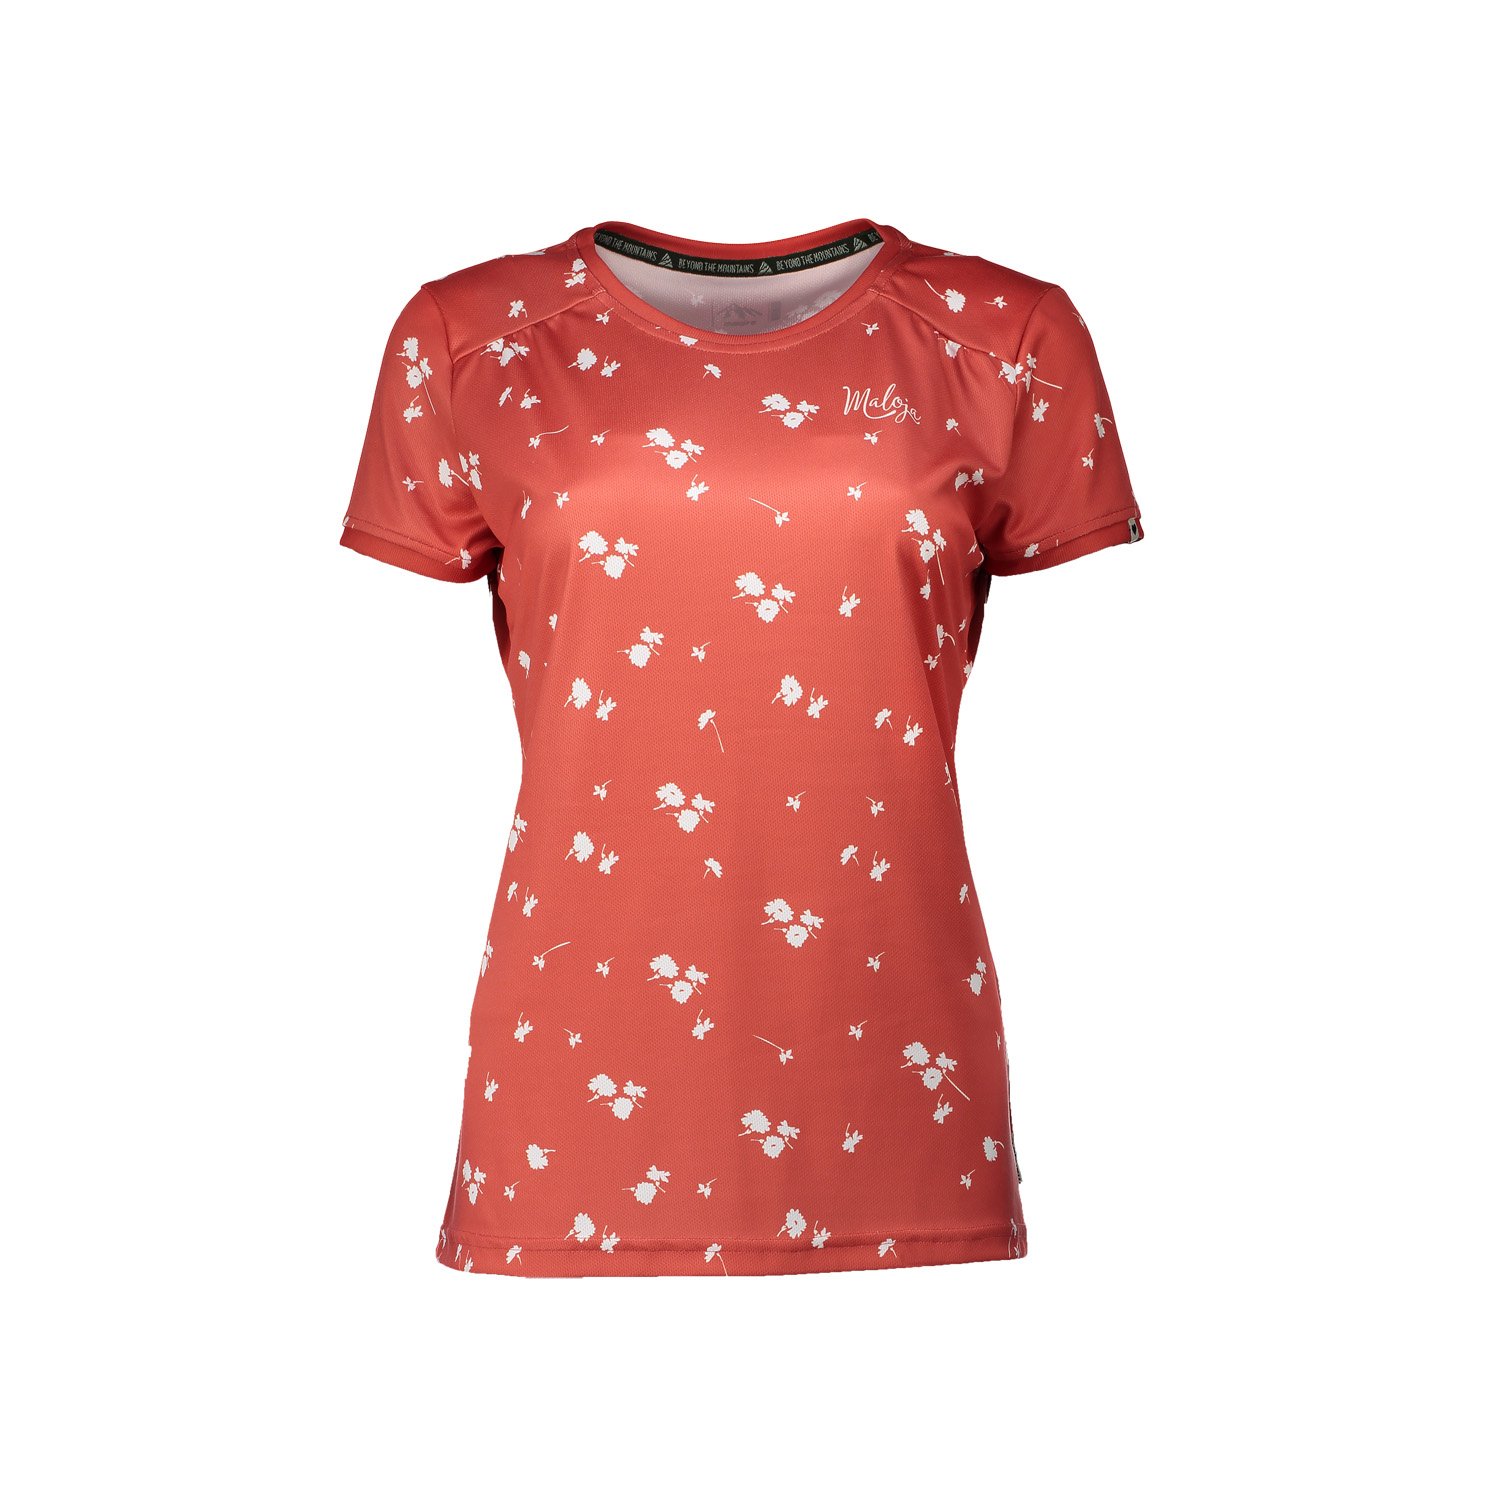 Maloja Girls Multisport-Shirt KrautweideM. Vintage Red